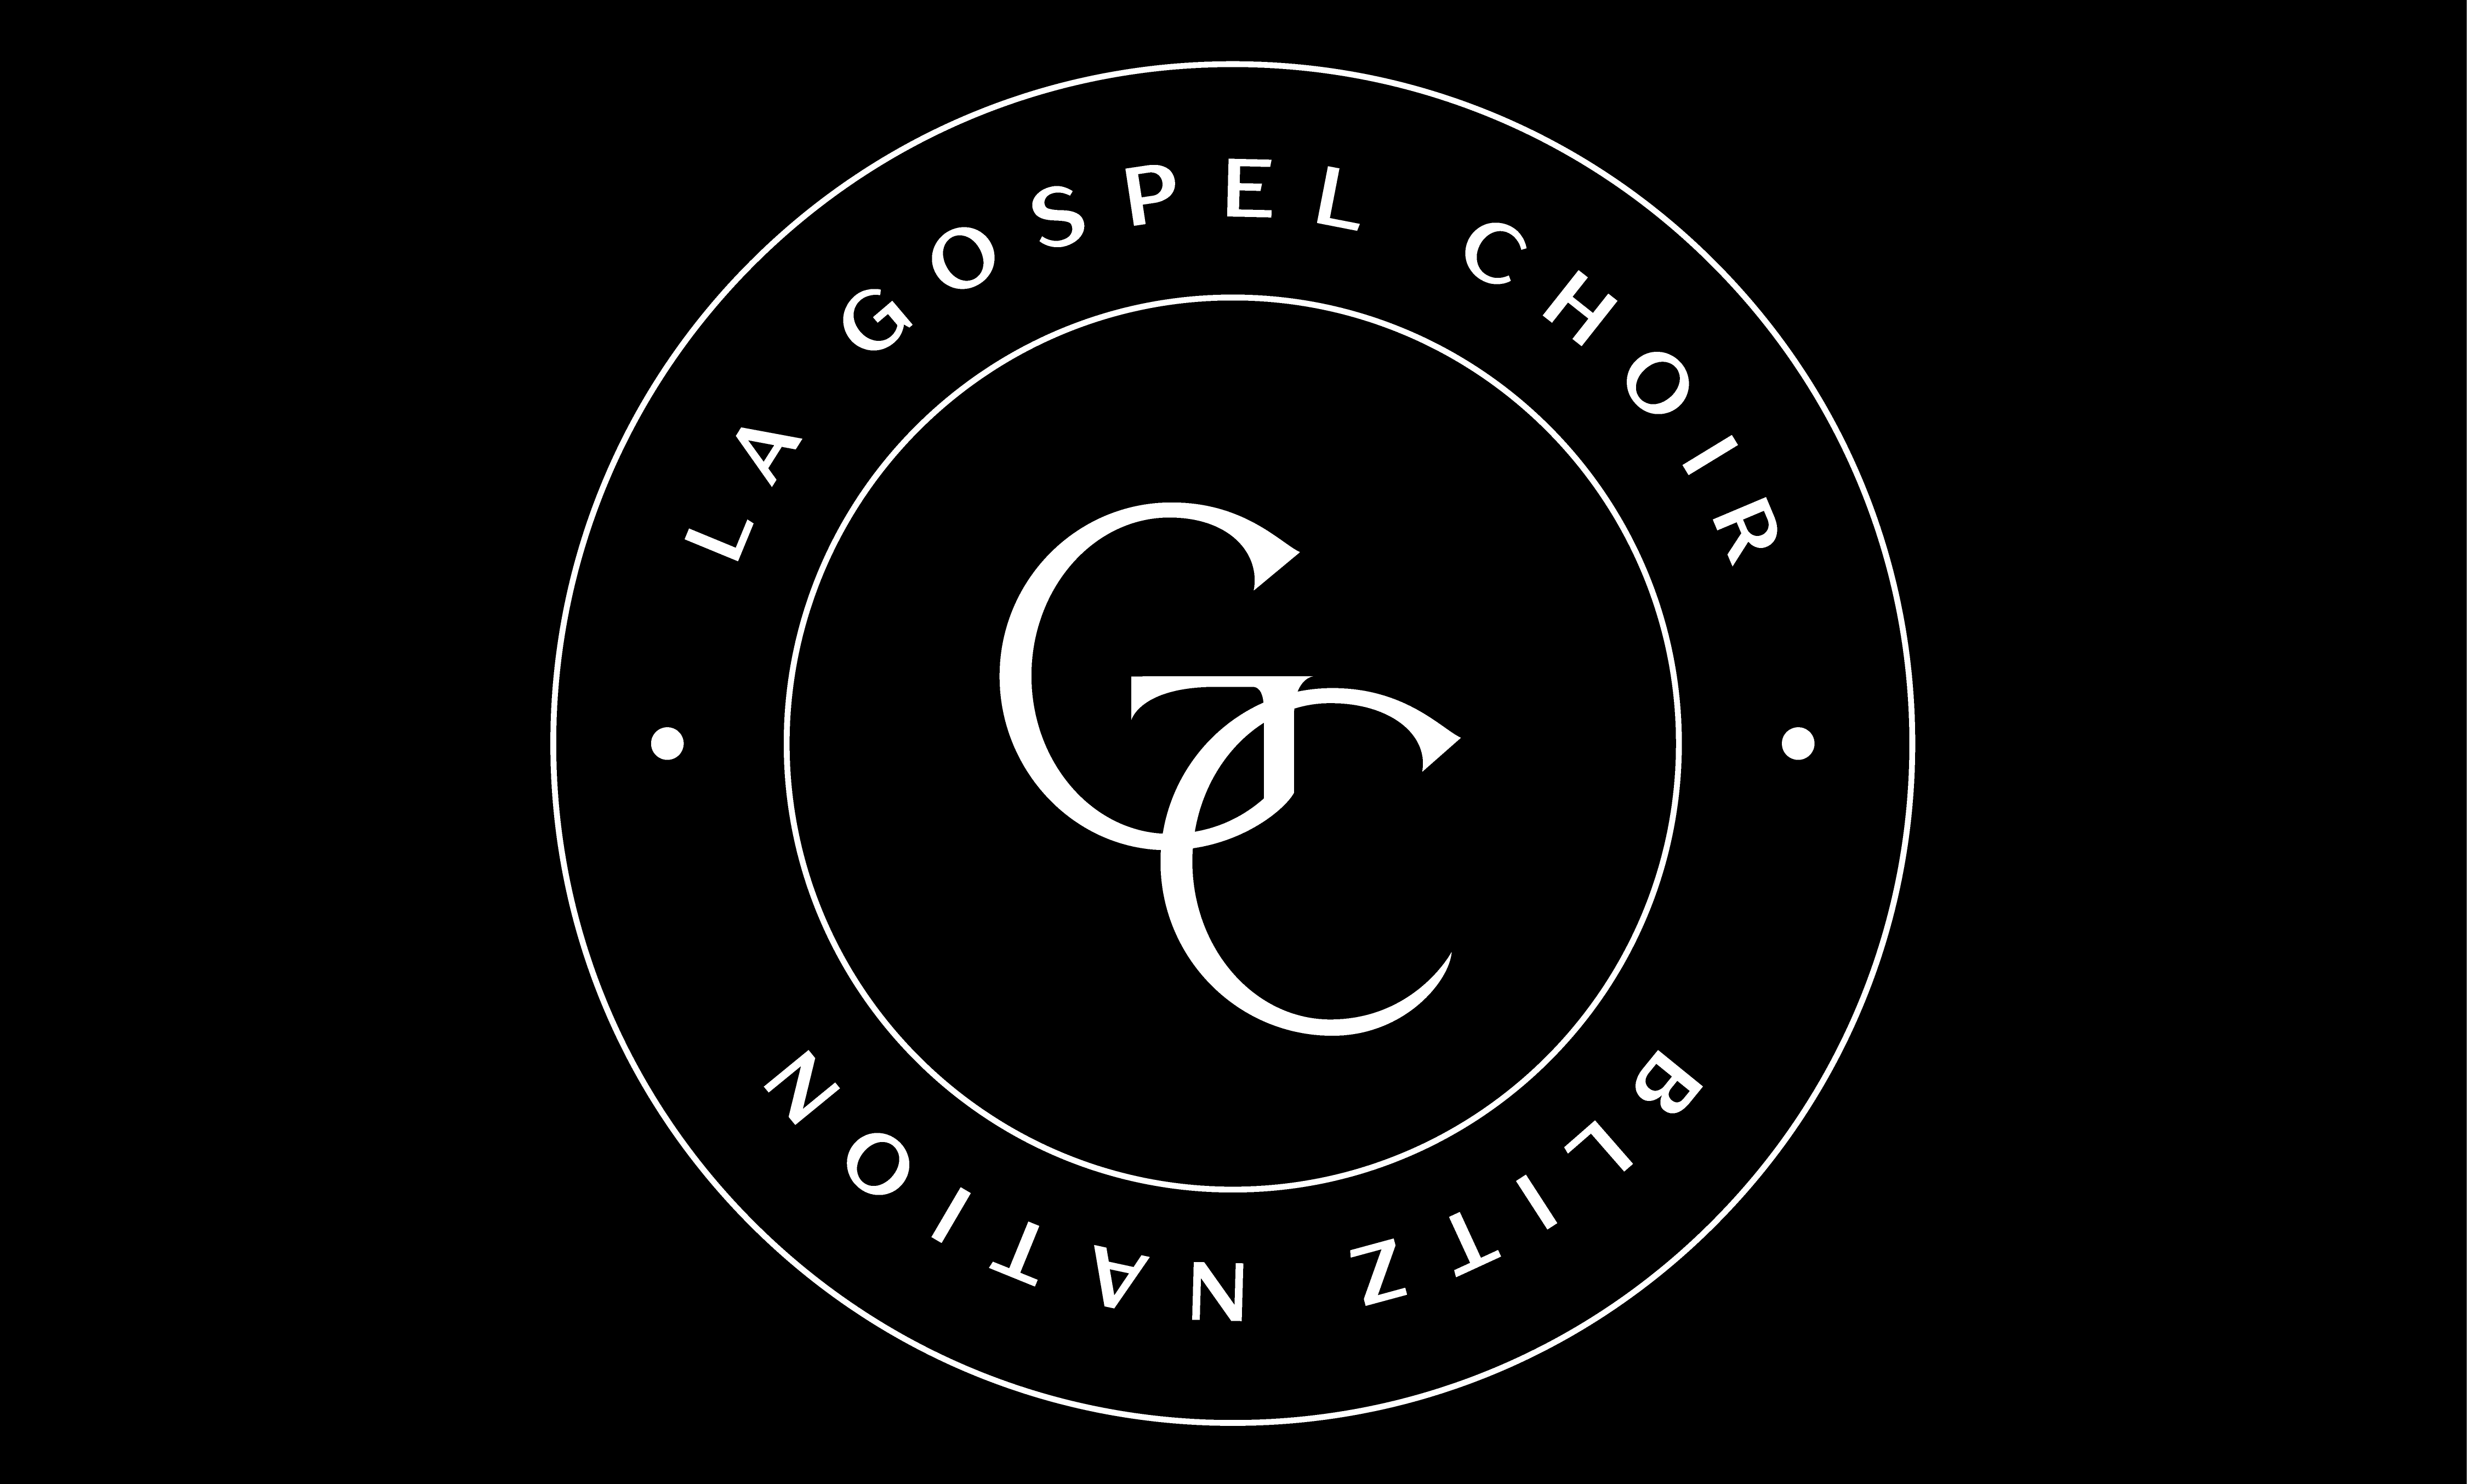 BN - LA Gospel Choir Logo - WHITE ON BLACK